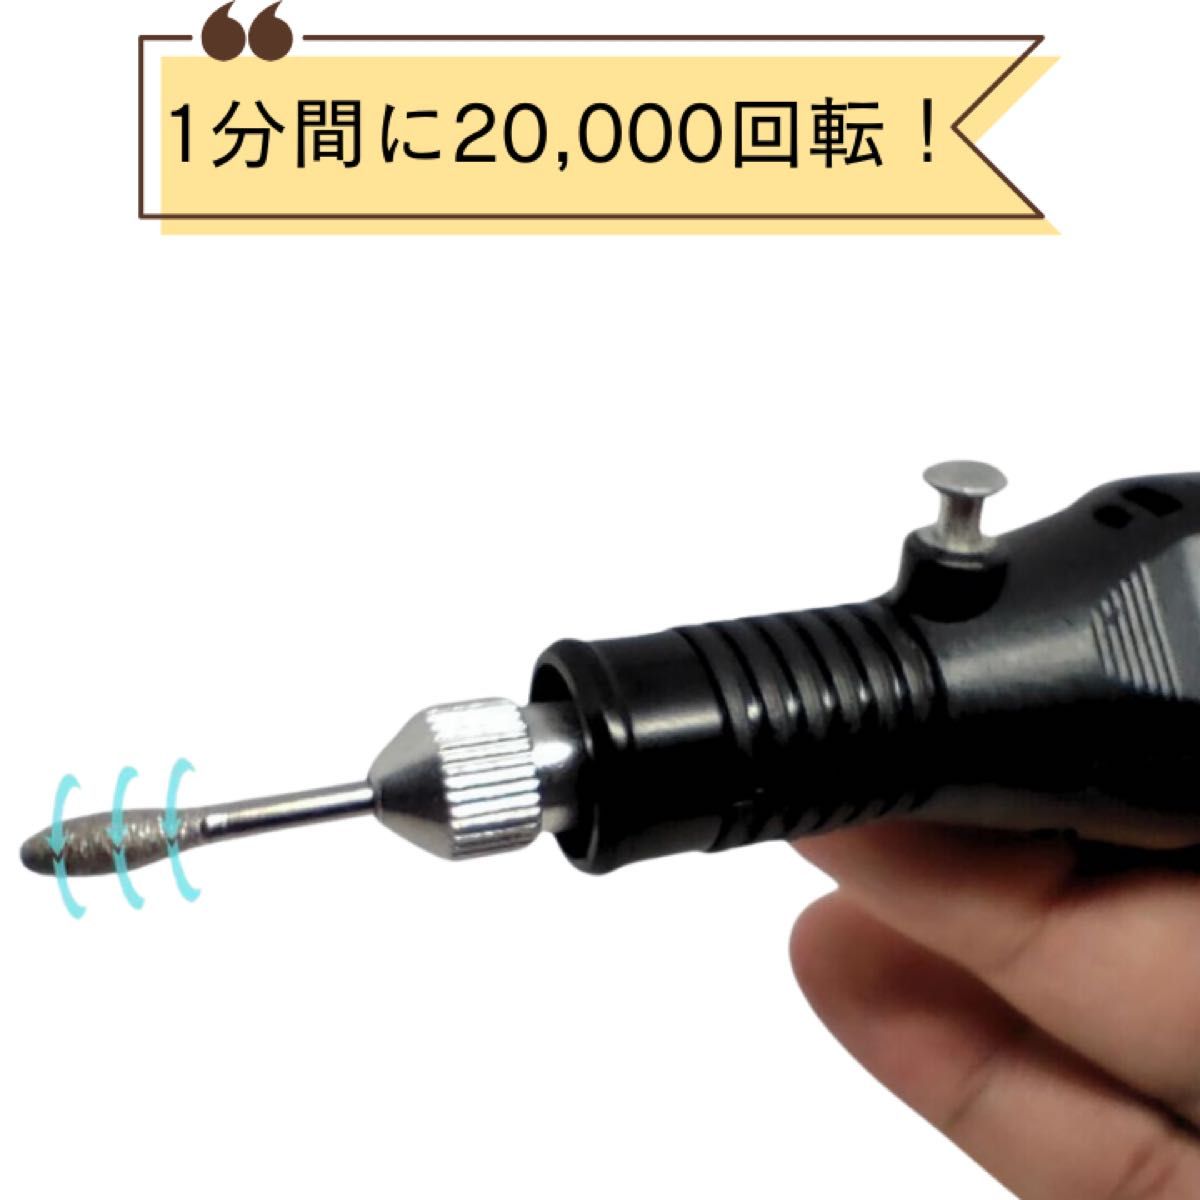 ネイル 彫刻 リューター 研磨 ビット 電動 ミニルーターセット 黒 USB給電